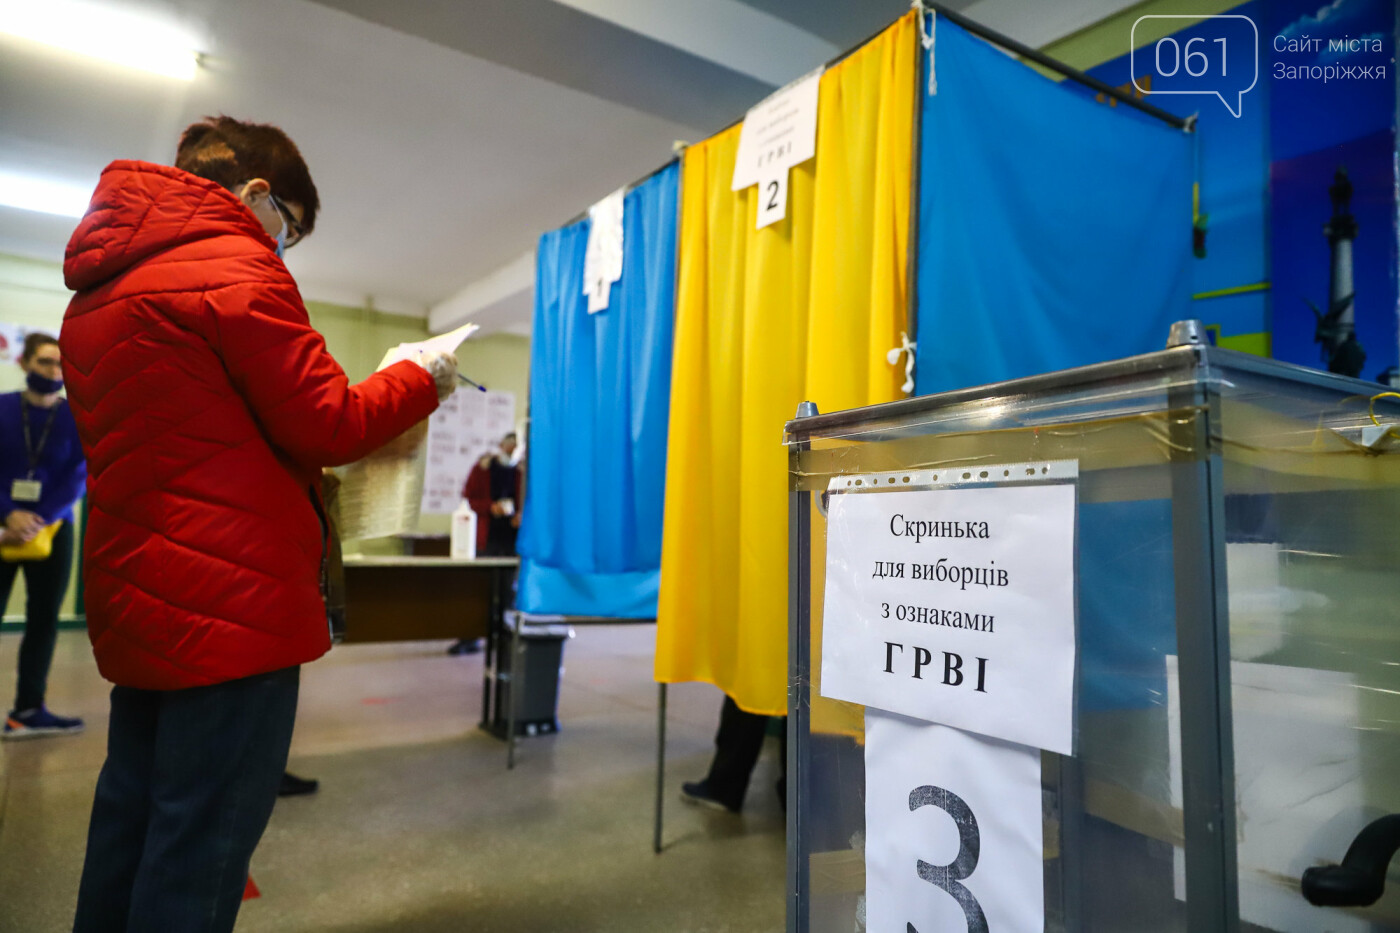 Выборы в условиях карантина: как запорожцы выбирают мэра и депутатов, - ФОТОРЕПОРТАЖ, фото-44